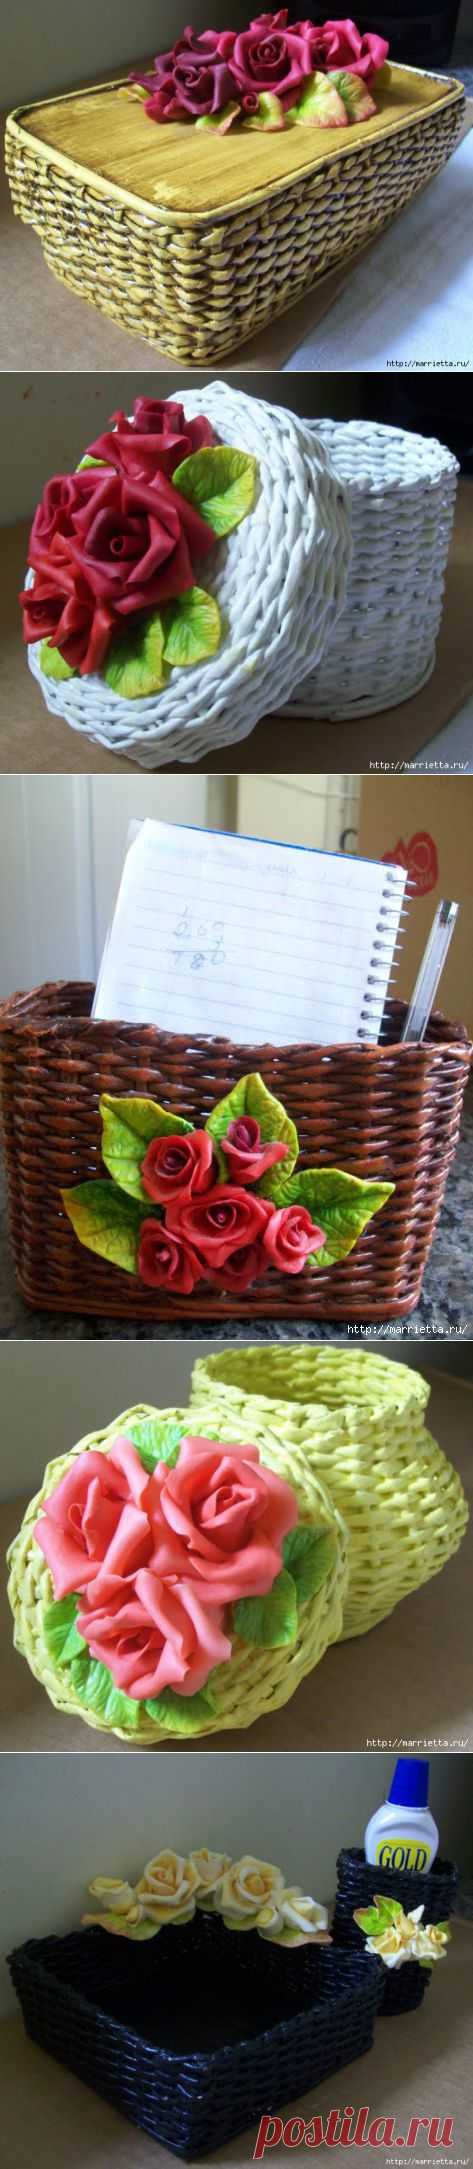 Плетение из газет. Декор корзинок розами из холодного фарфора,Мастер-класс.